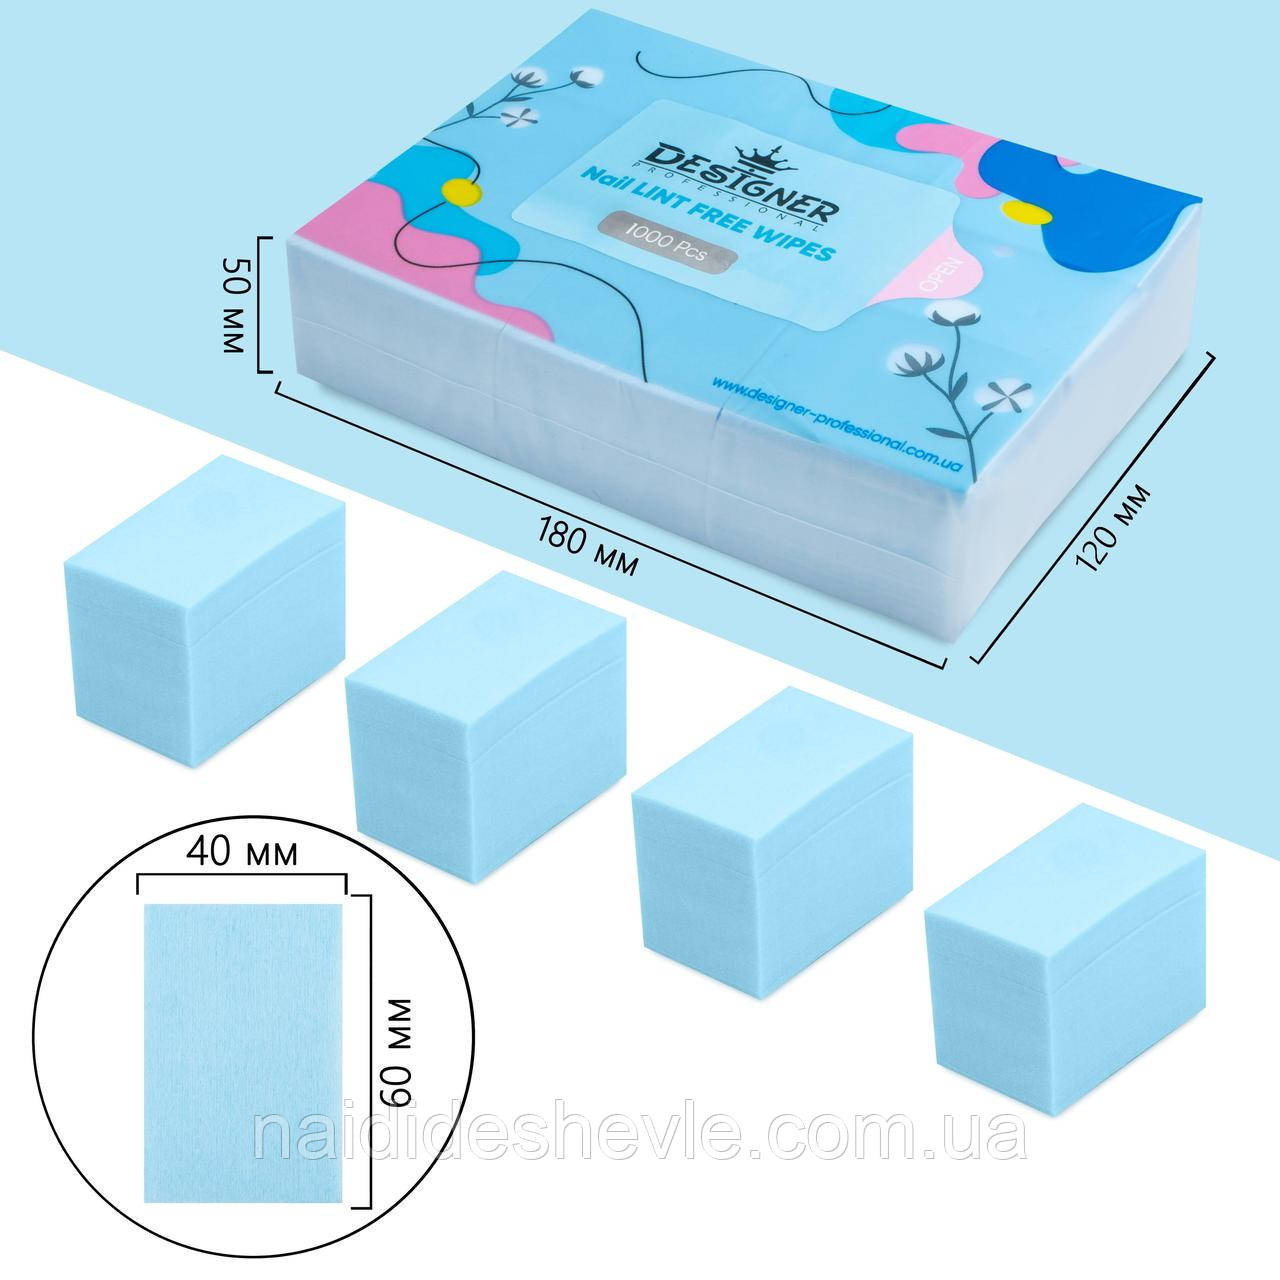 Безворсові одноразові серветки Дизайнер/ кольорові, 1000 шт в упаковці Блакитний